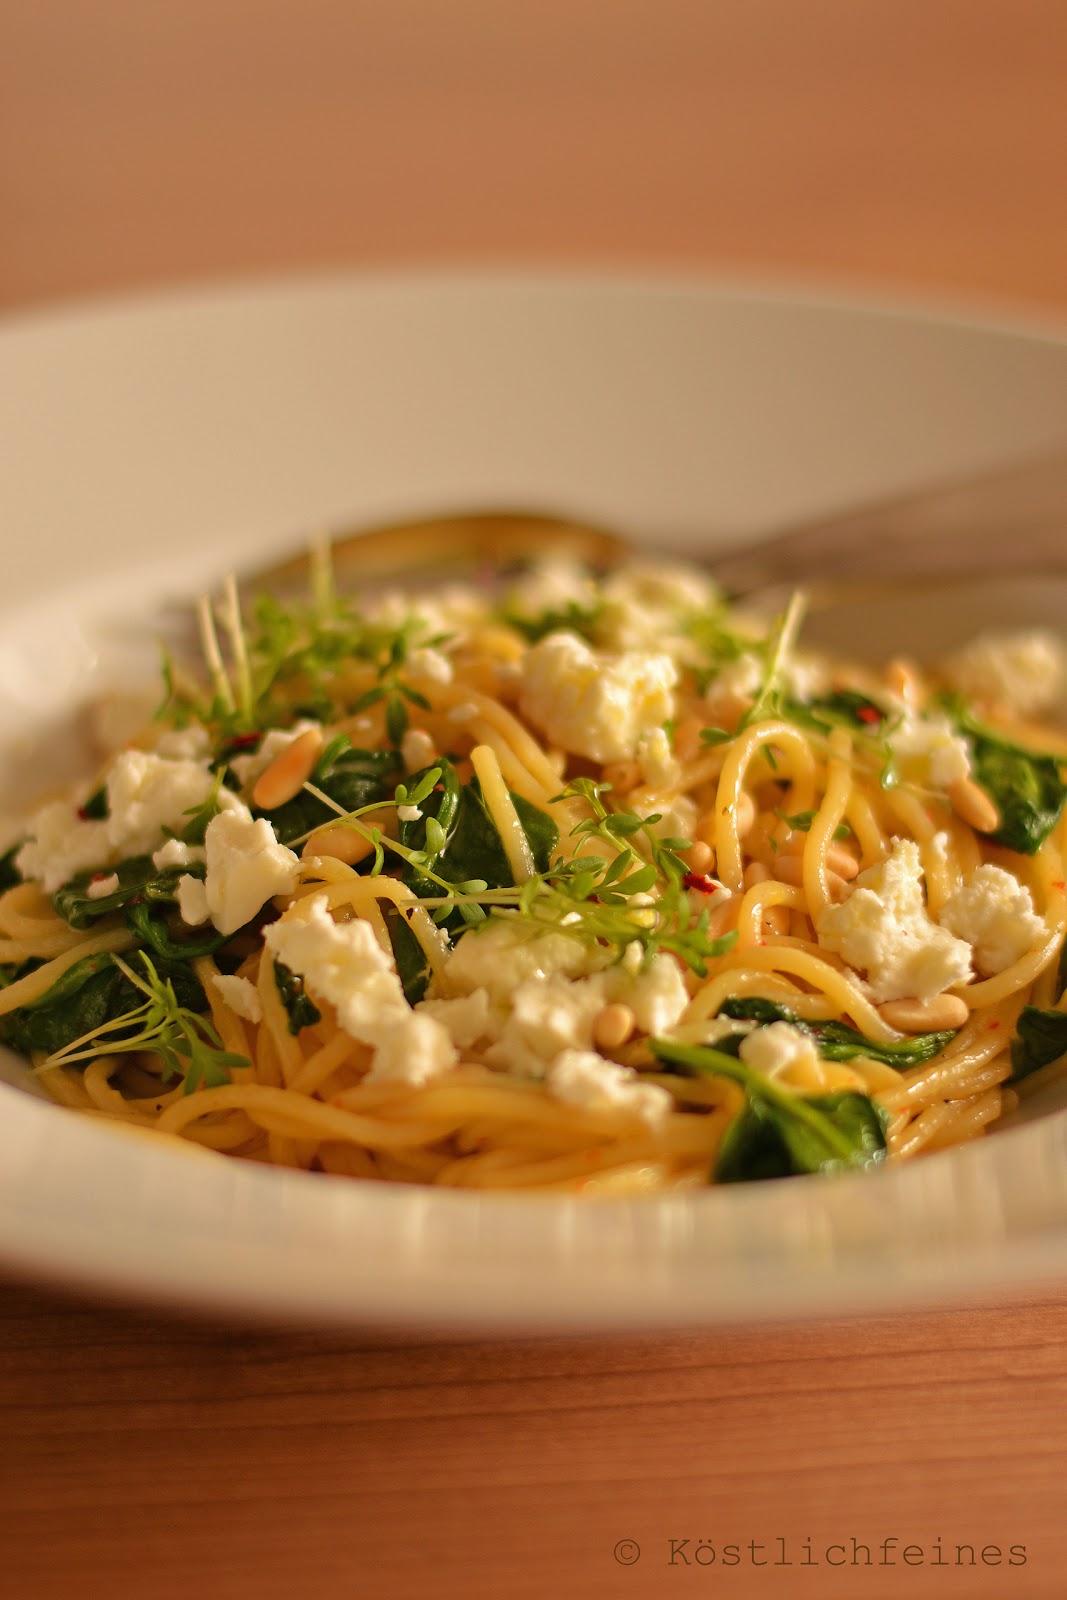 köstlichfeines: Spaghetti mit Spinat, Feta und Pinienkernen